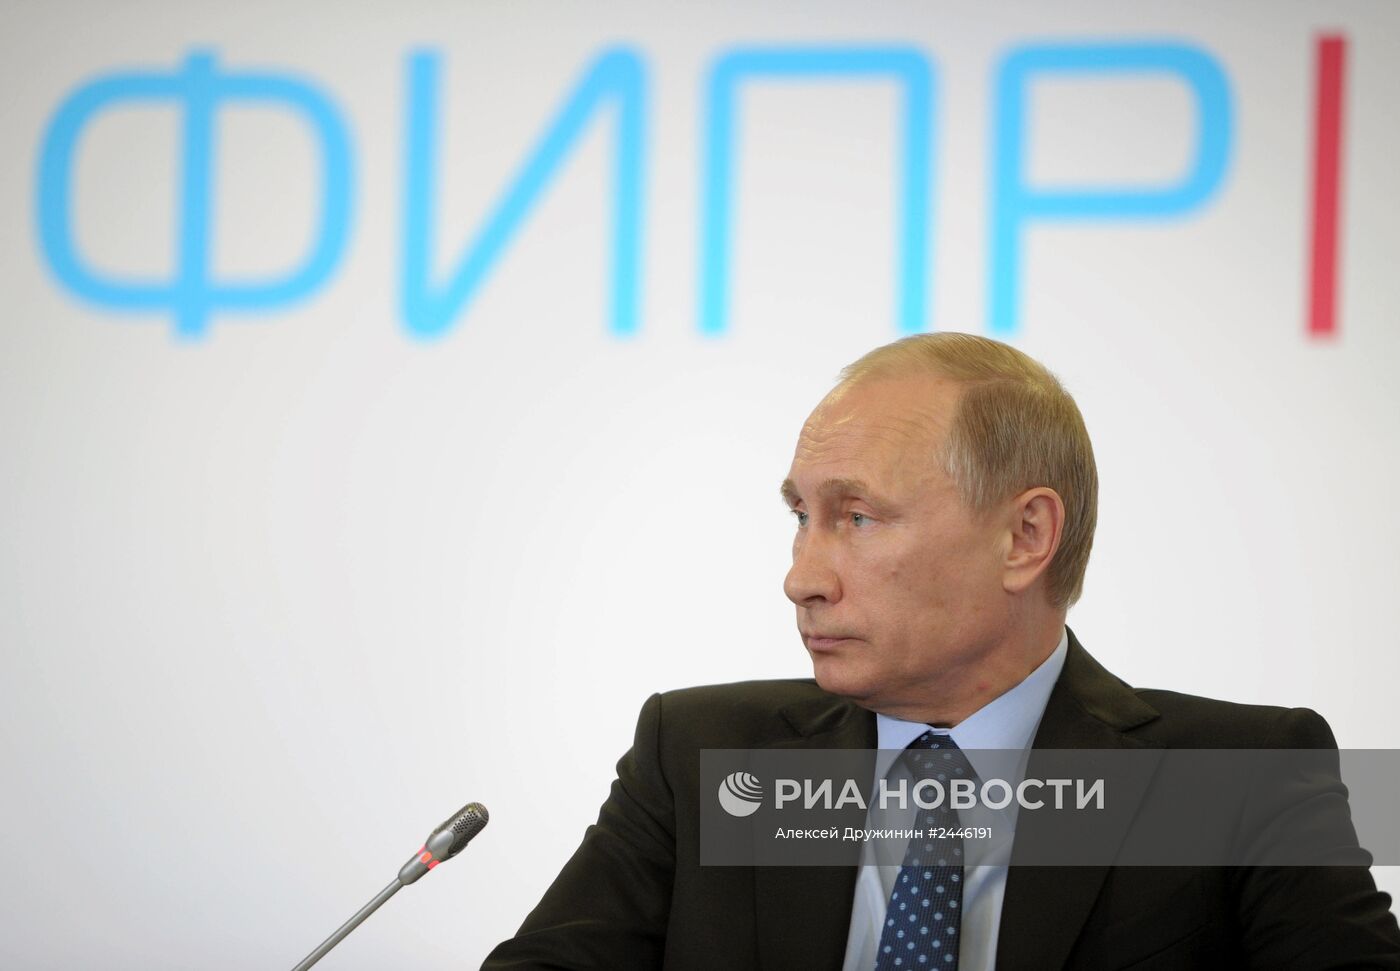 В.Путин посетил форум "Интернет-предпринимательство в России"